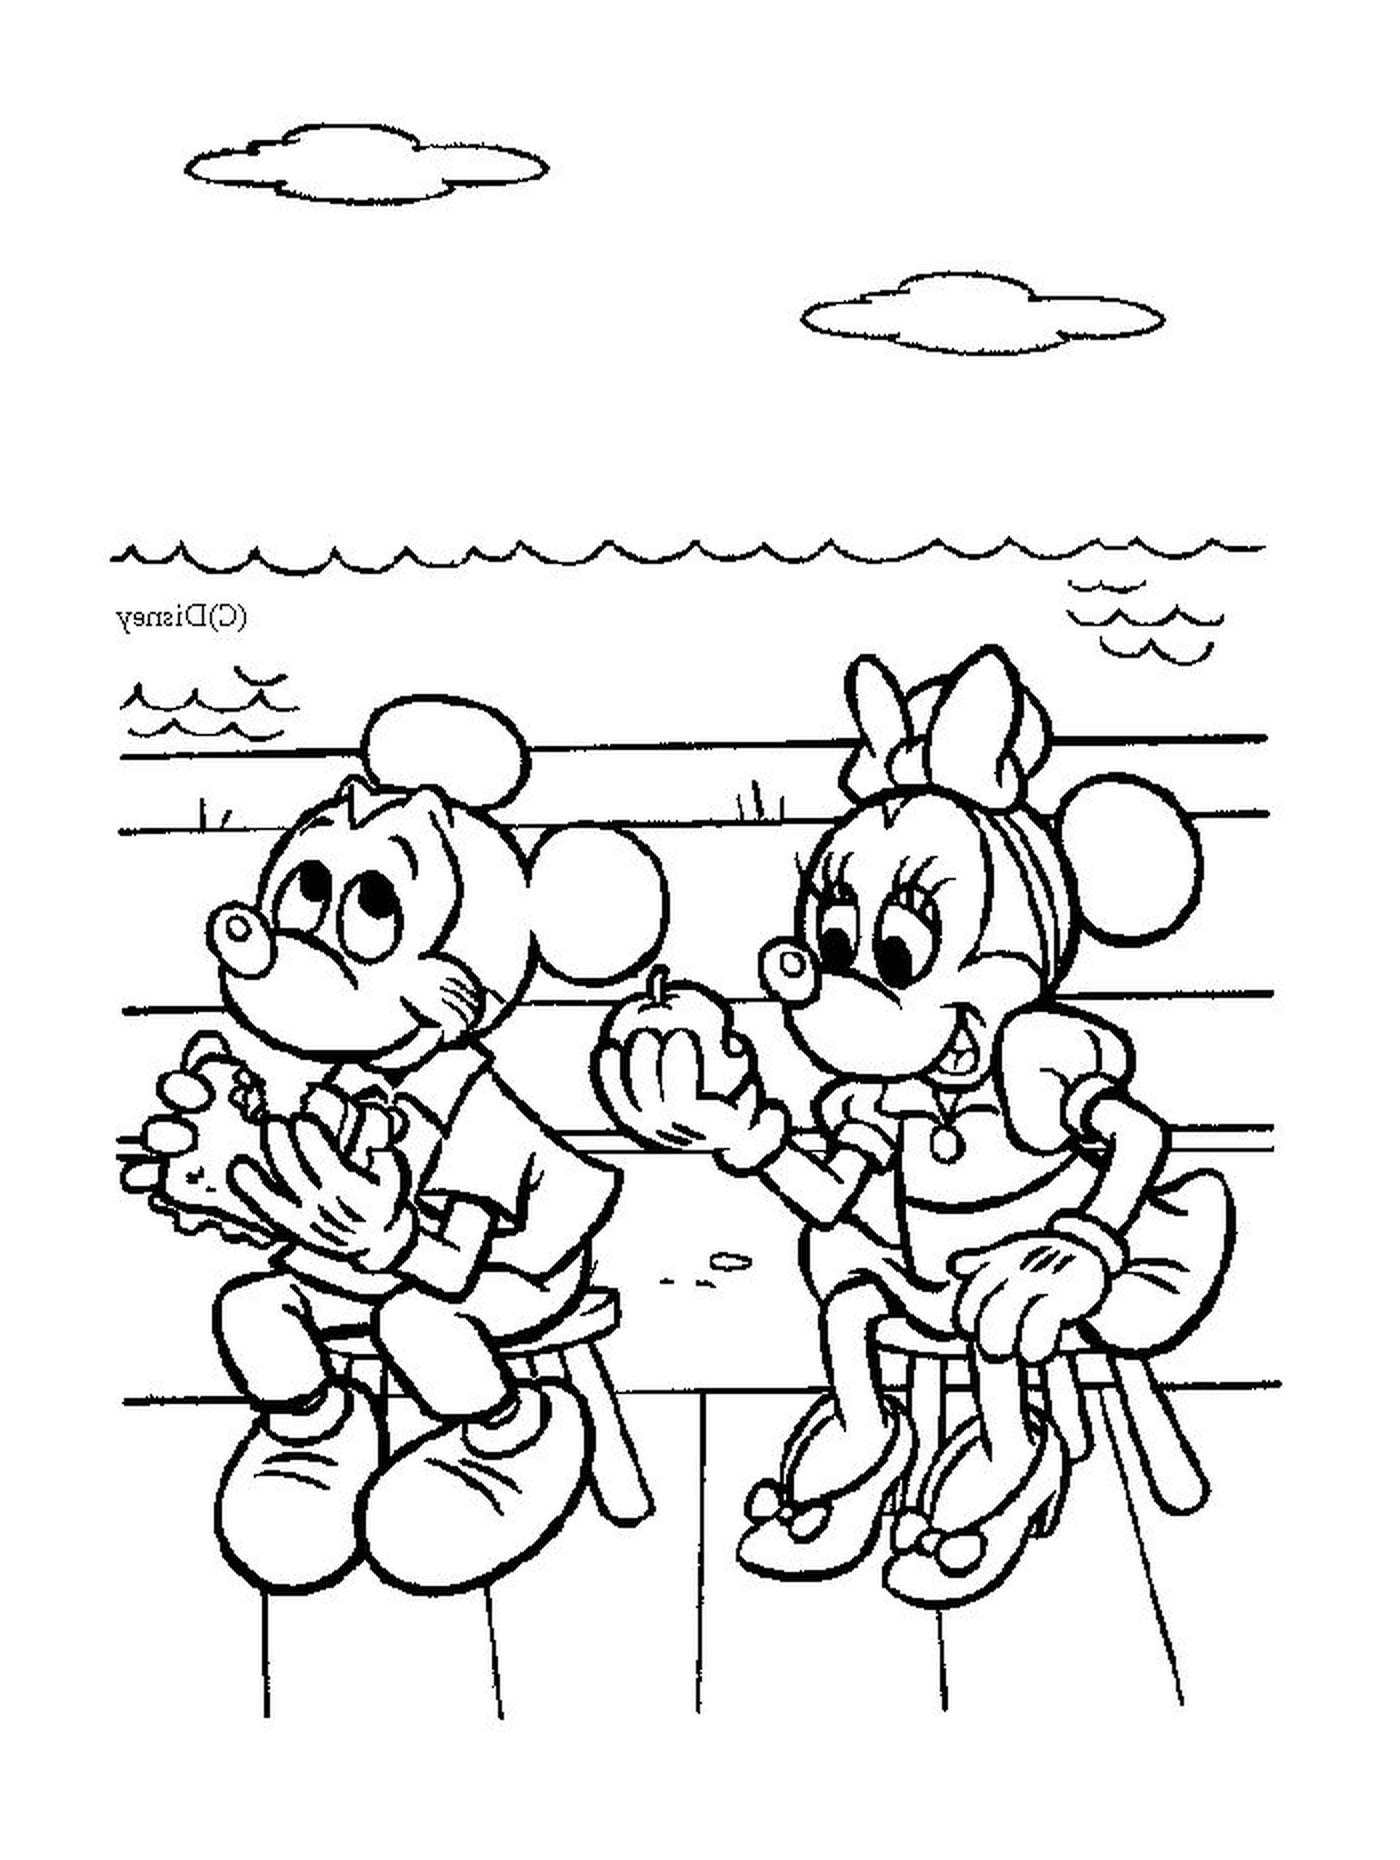  米奇老鼠和米尼老鼠坐在长椅上 